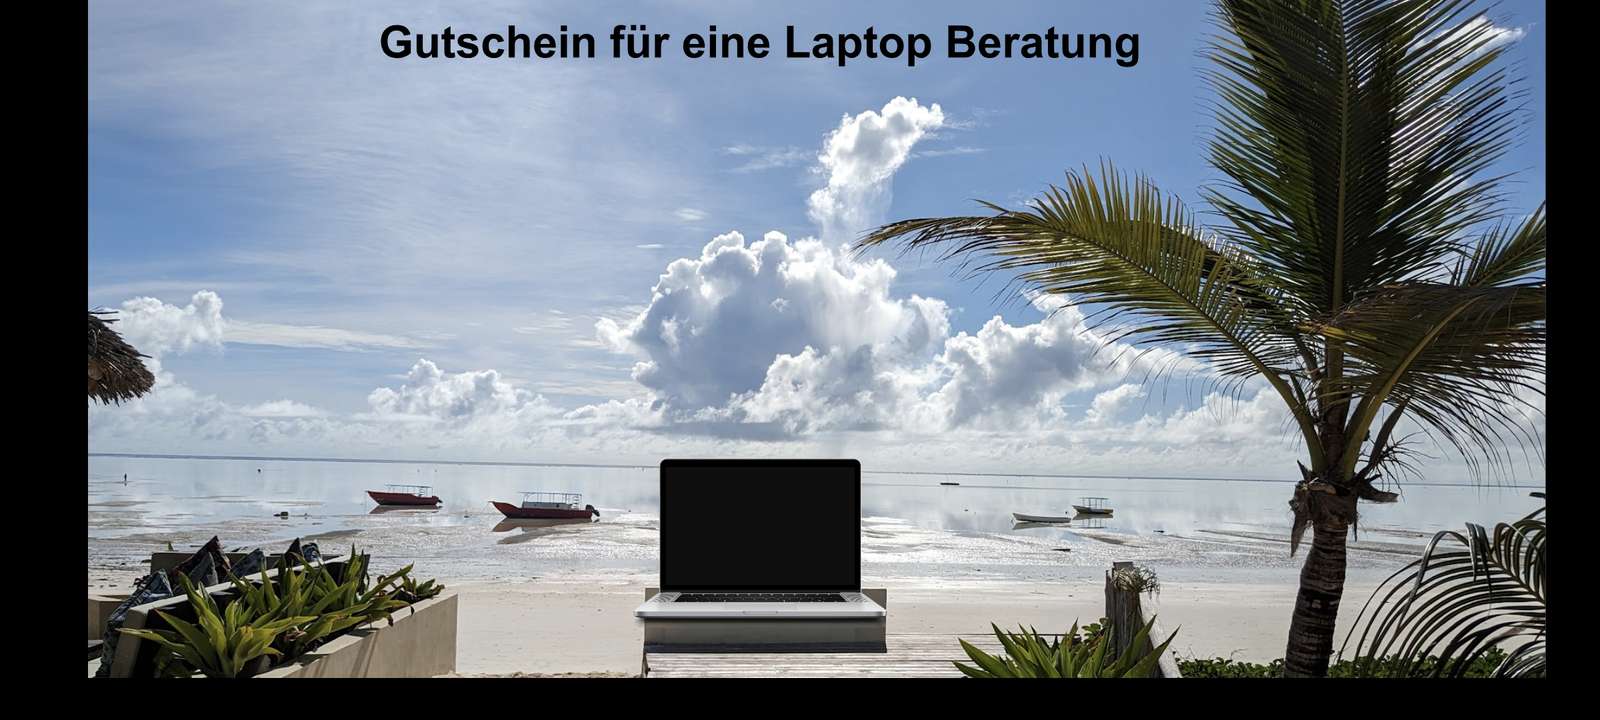 Přenosný počítač na pláži puzzle online z fotografie